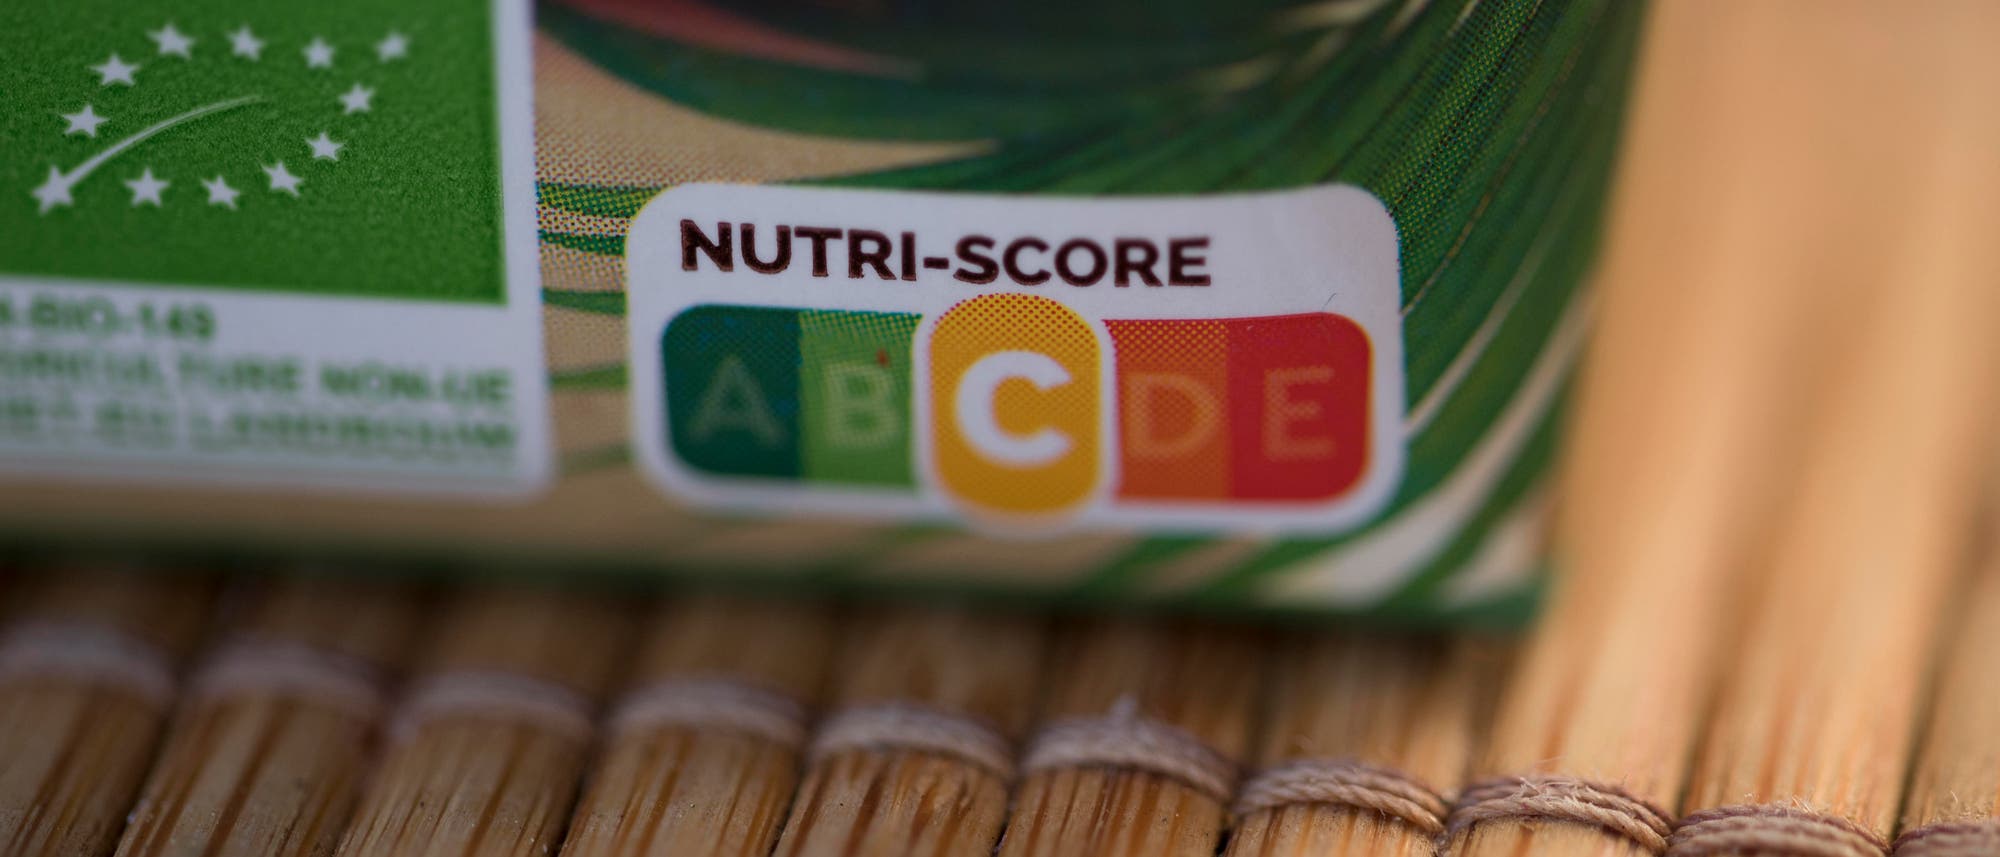 Auf einem Lebensmittelprodukt ist ein Nutri-Score abgedruckt.